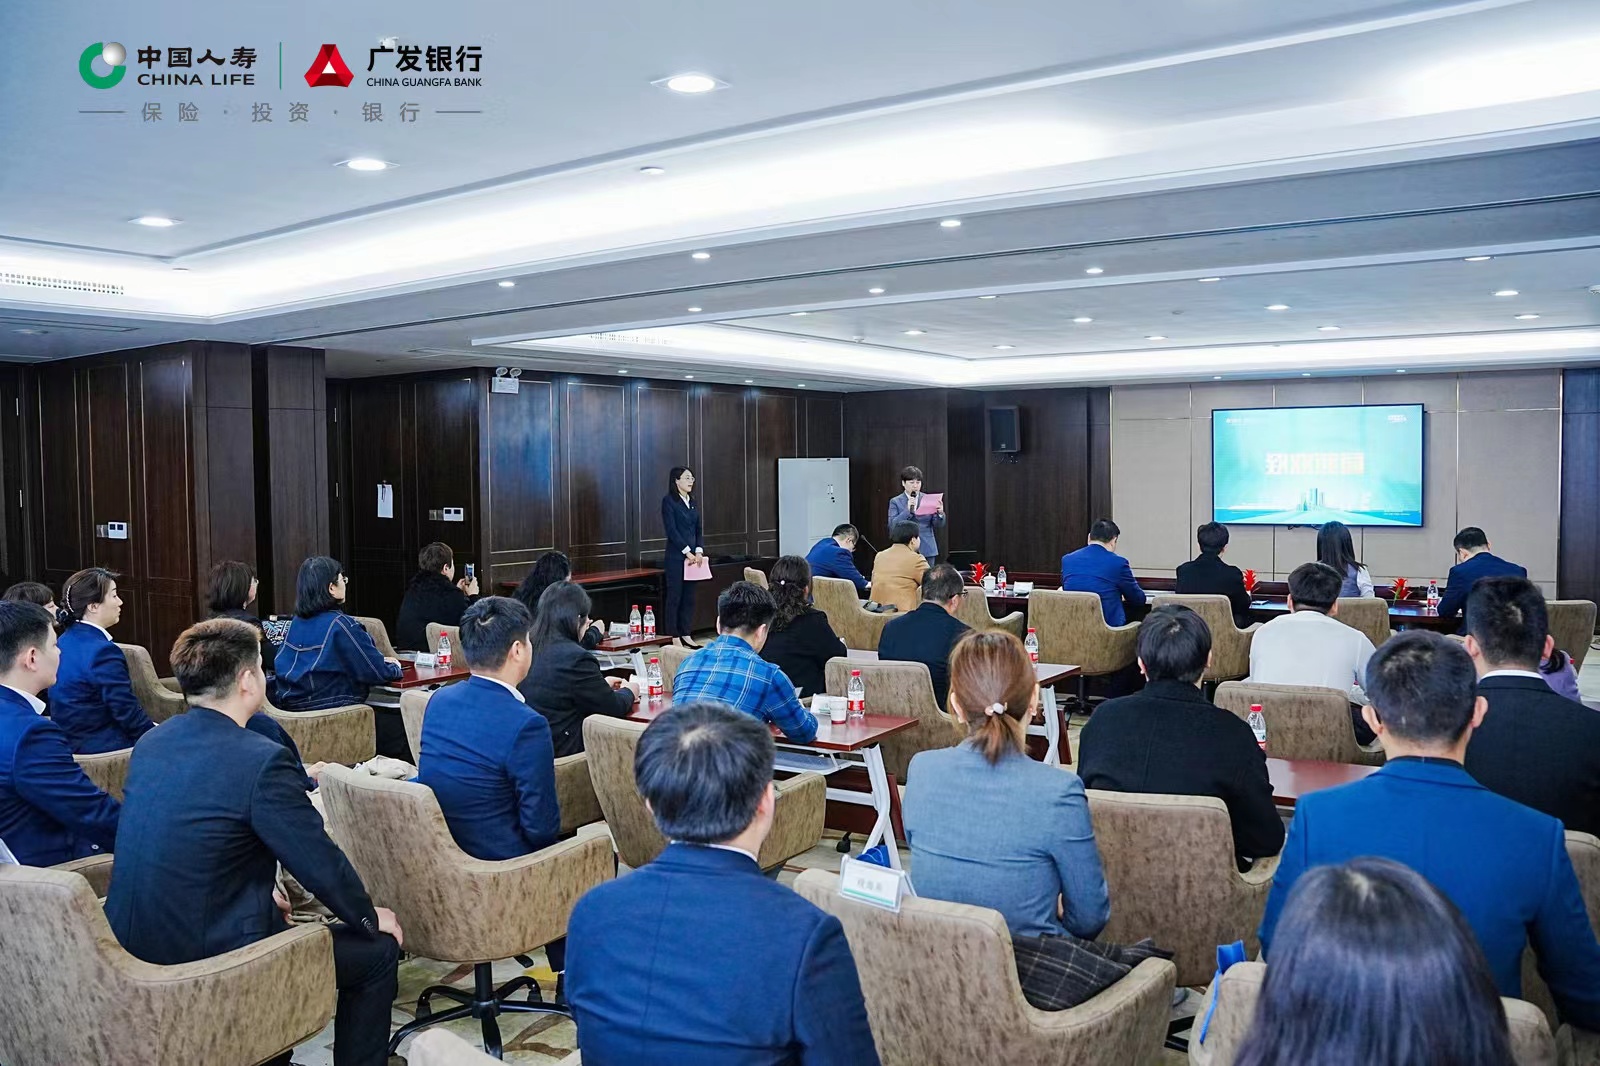 中国人寿合肥市分公司与广发银行合肥分行联合举办高级合伙人首期见面会